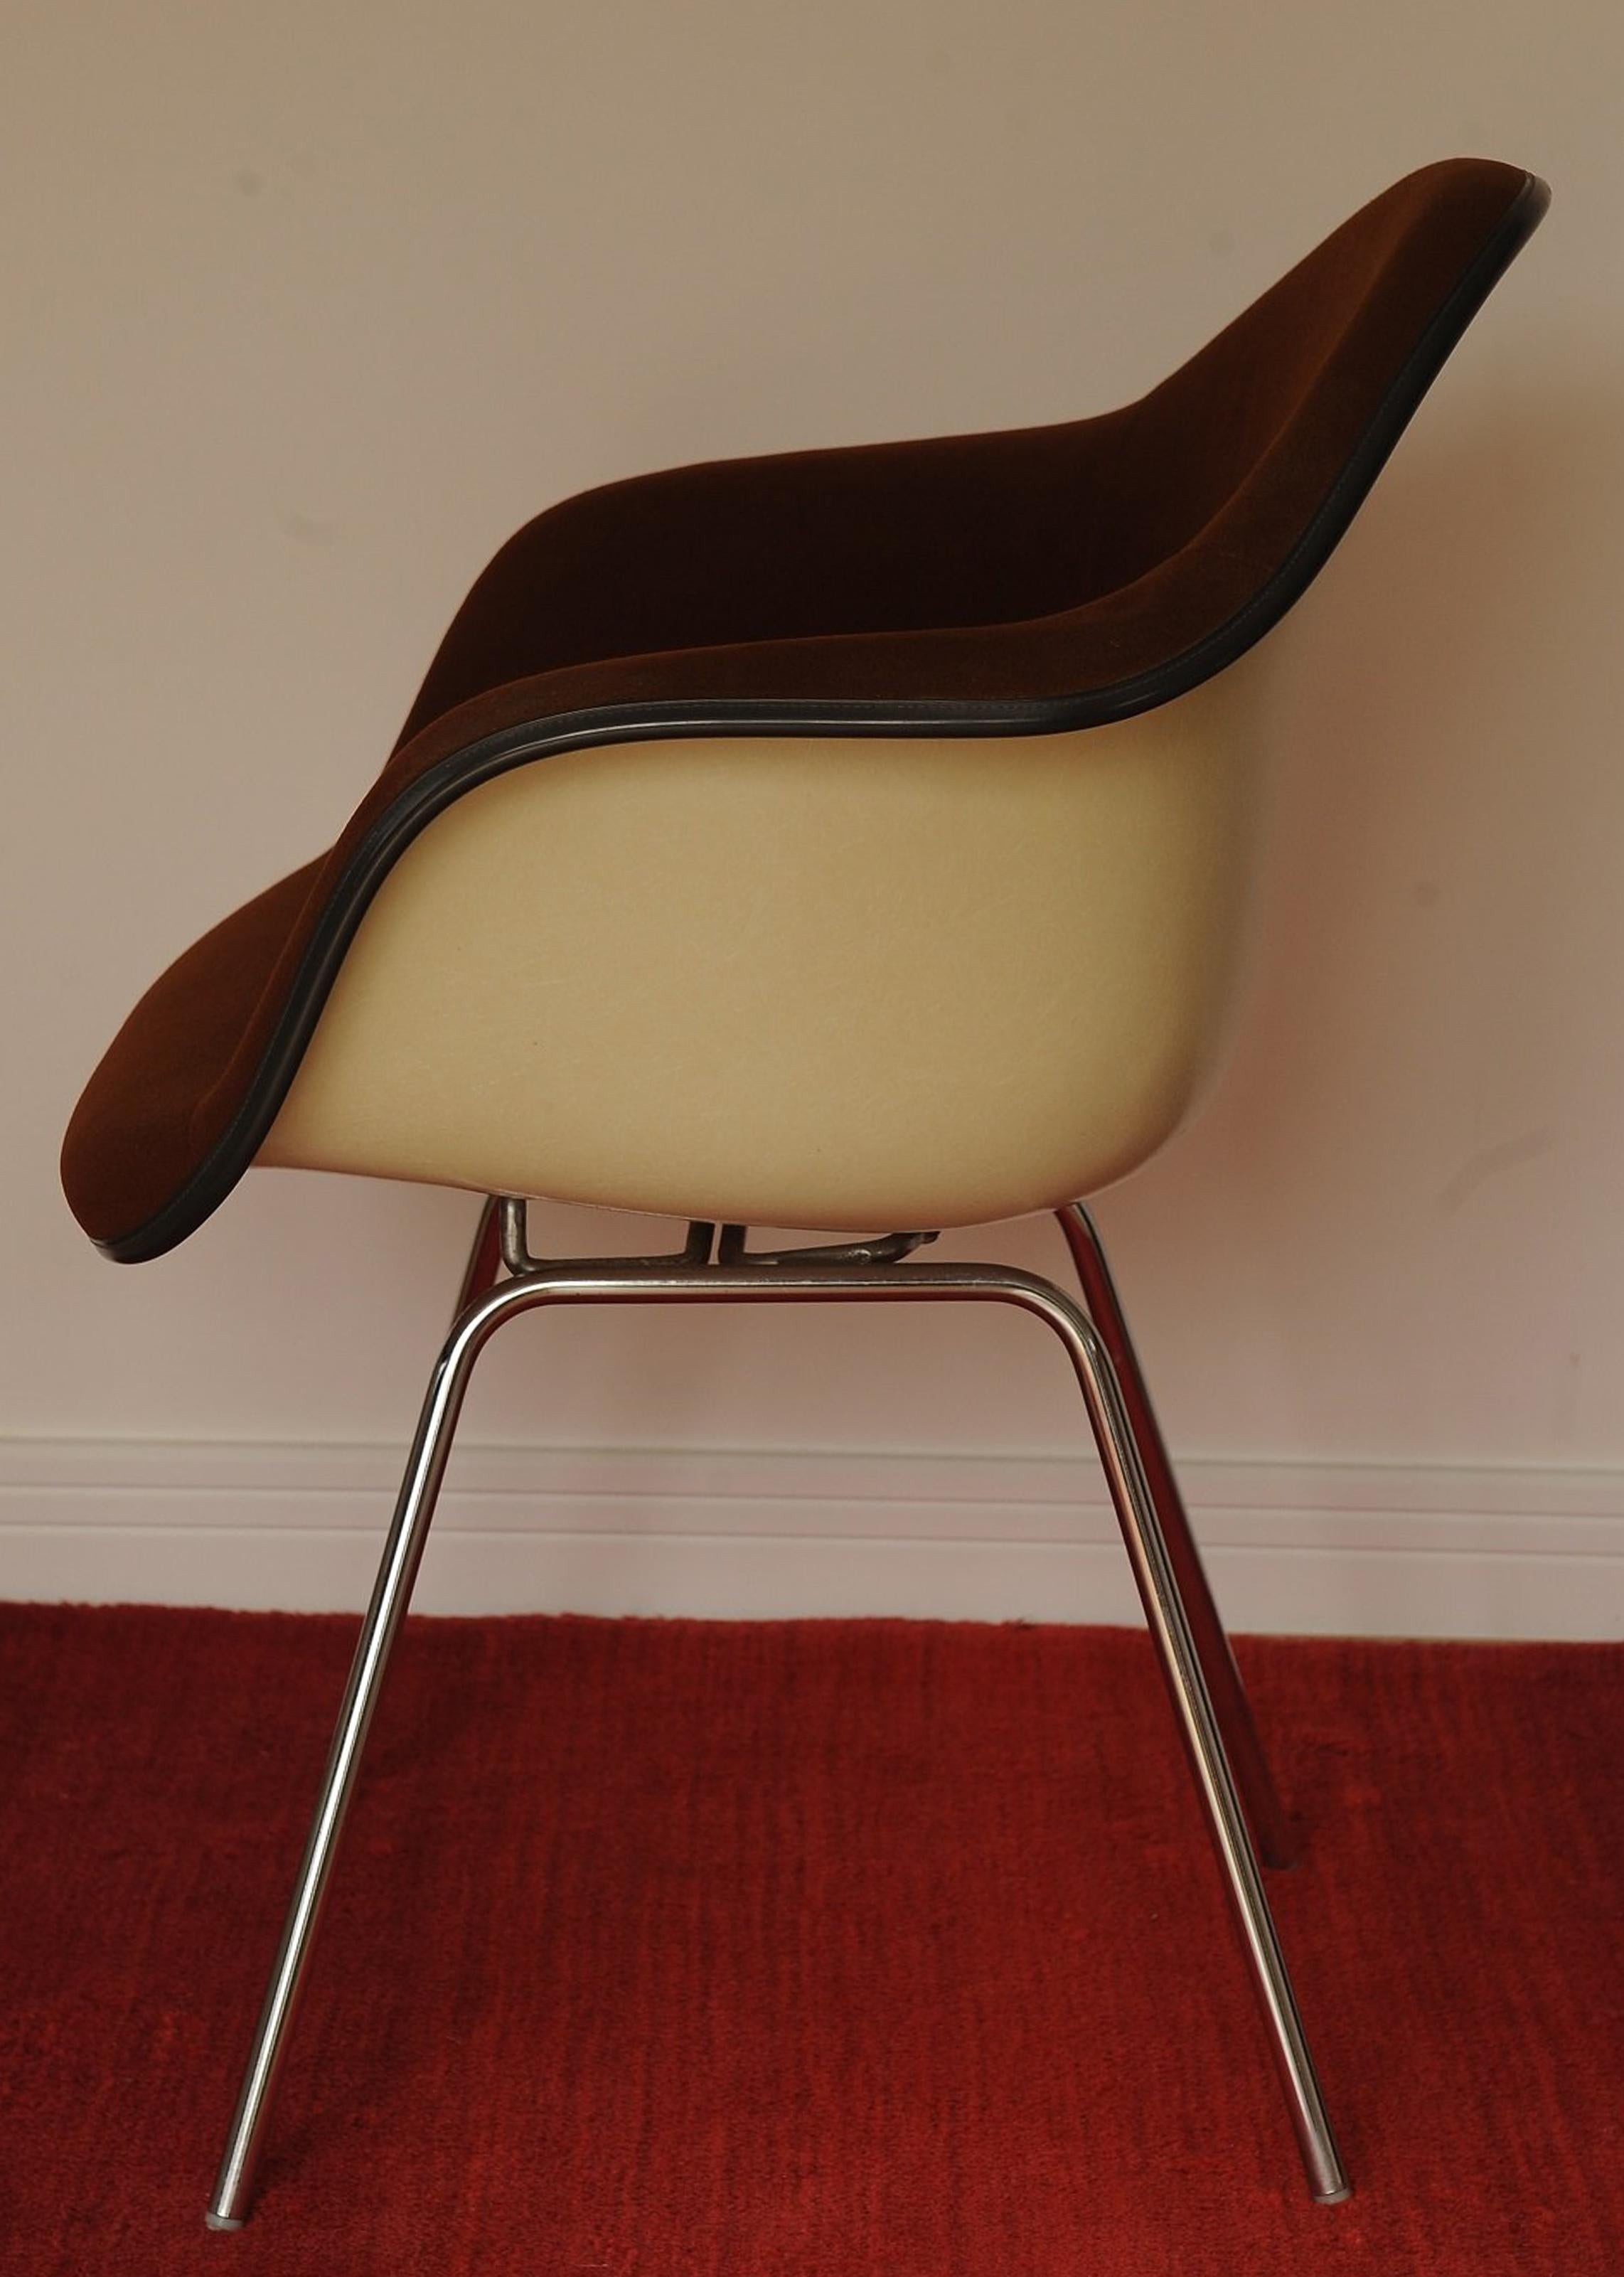 Original Iconic Mid Century Modern Charles & Ray Eames für Herman Miller DAX Chair Branding unter Stuhl 
Für den Schreibtisch oder das Arbeitszimmer, den Bürostuhl oder die Lounge 

Marke: Herman Miller I Entwerfer: Charles & Ray Eames